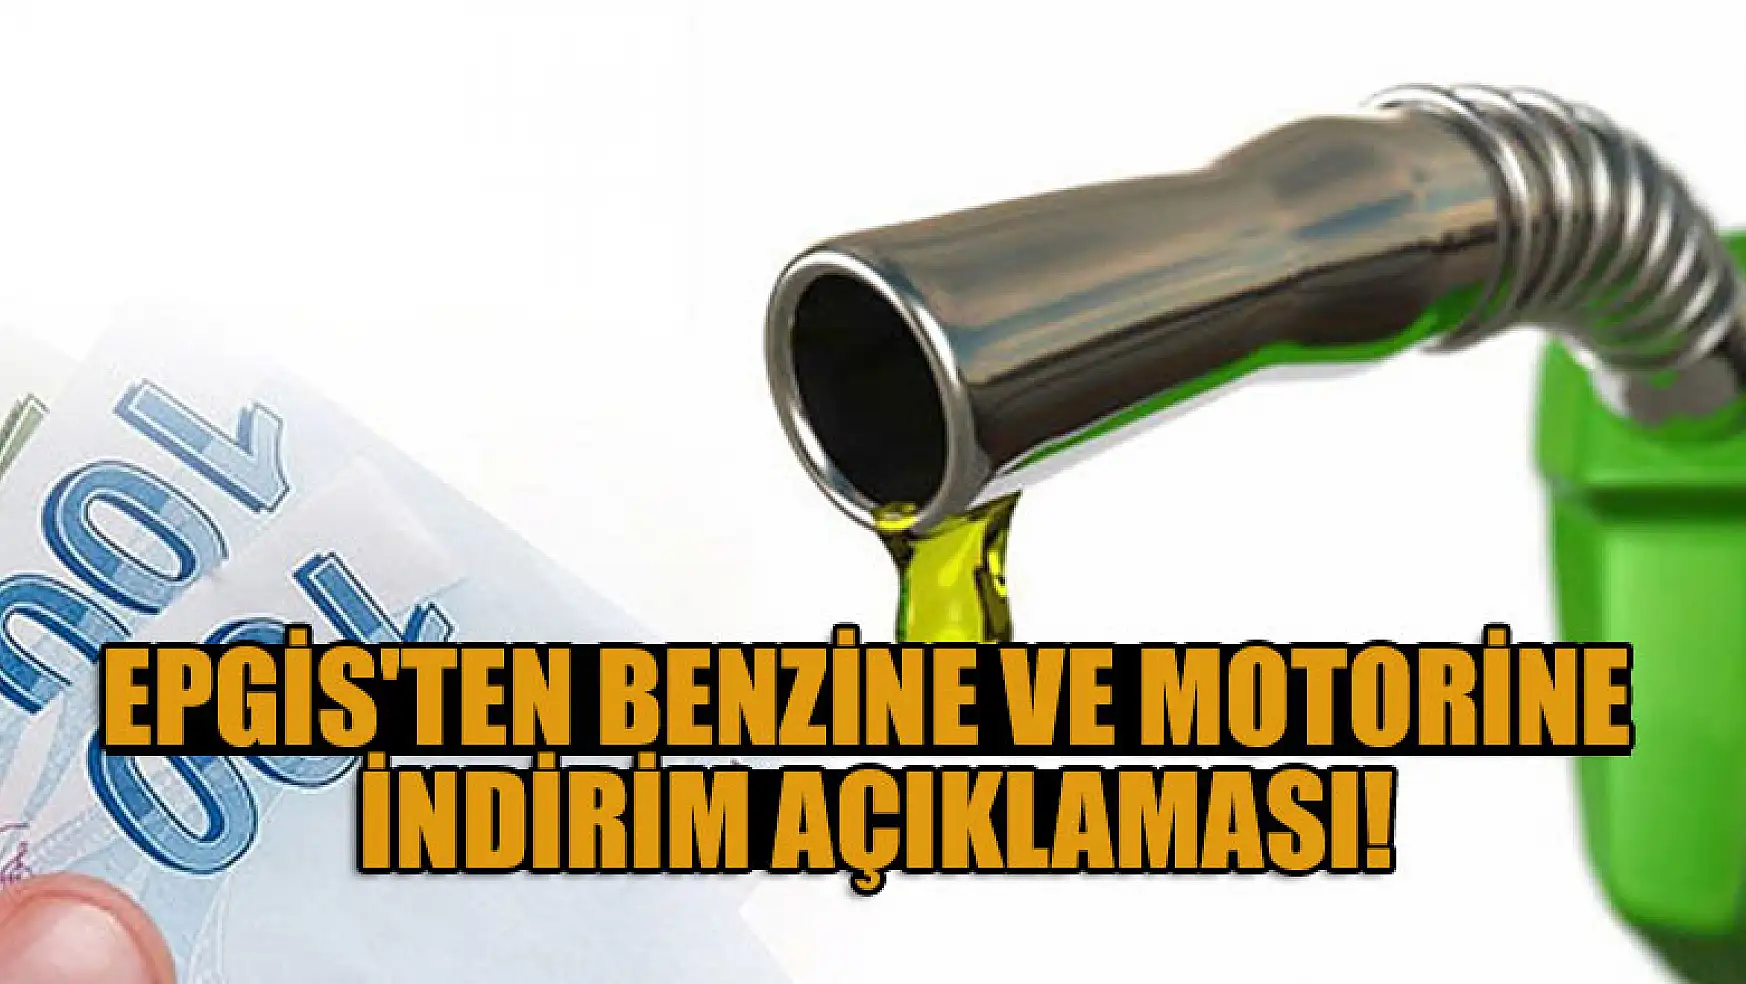 EPGİS'ten benzine ve motorine indirim açıklaması